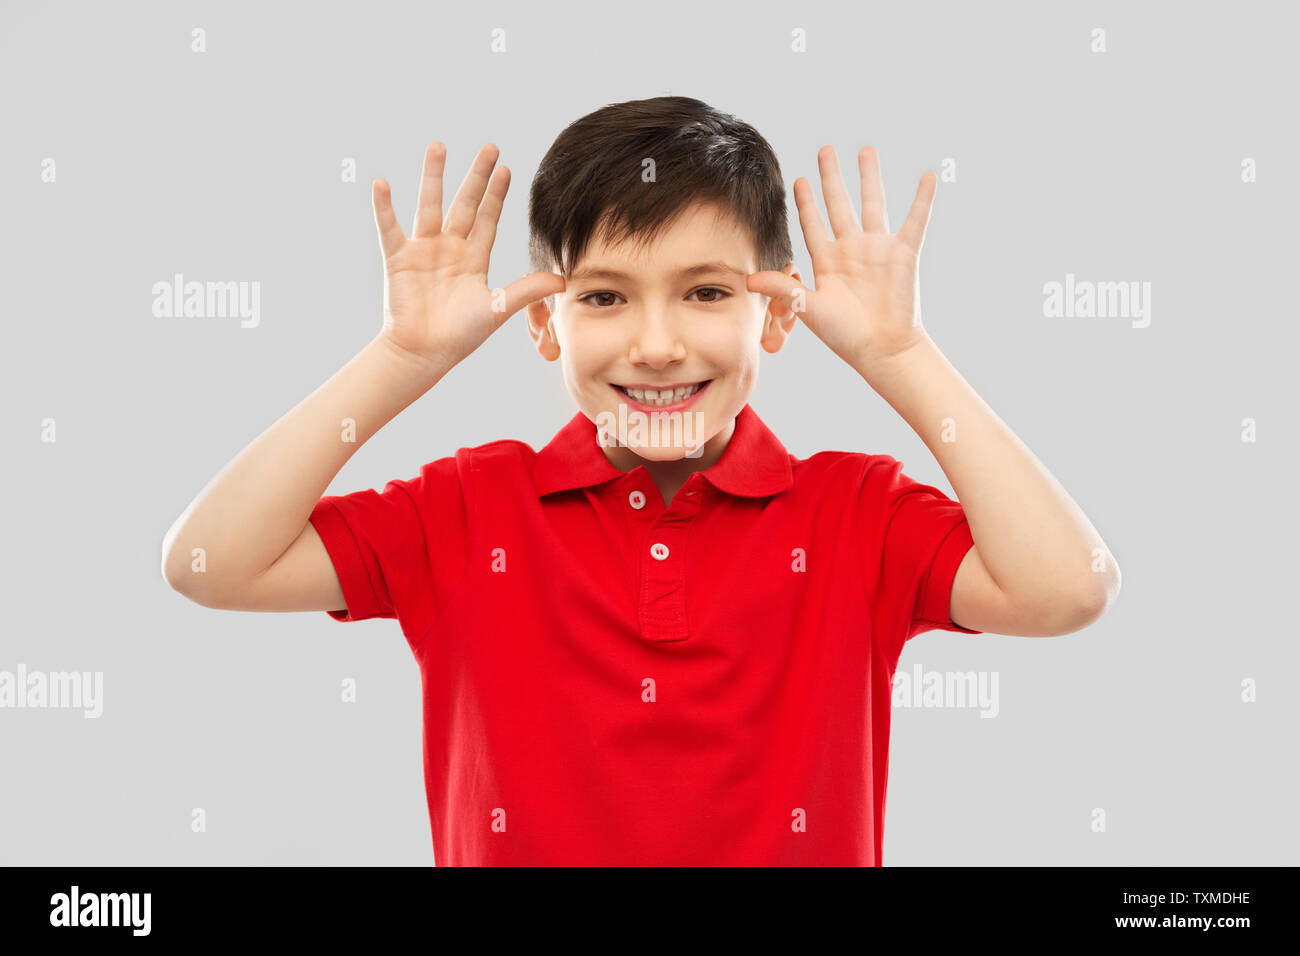 Kleinen Jungen in roten T-Shirt, der grosse Ohren durch Hände Stockfoto